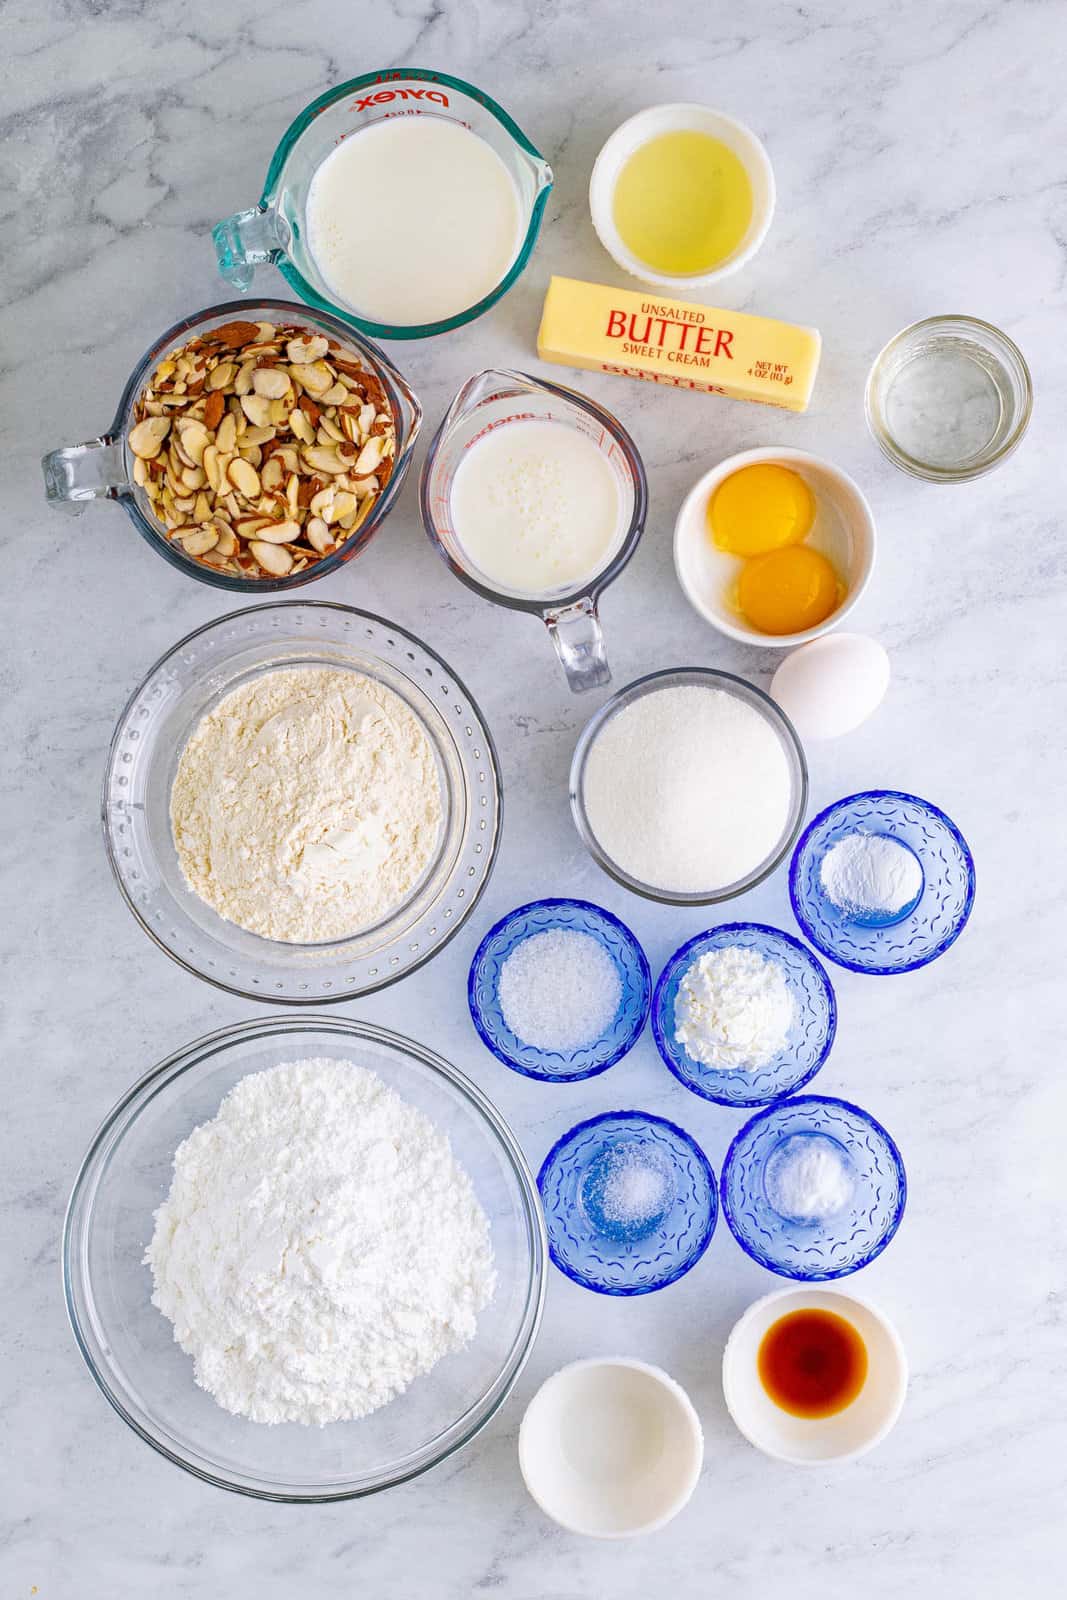 Ingredients needed to make Copycat Prantl's Burnt Almond Torte.